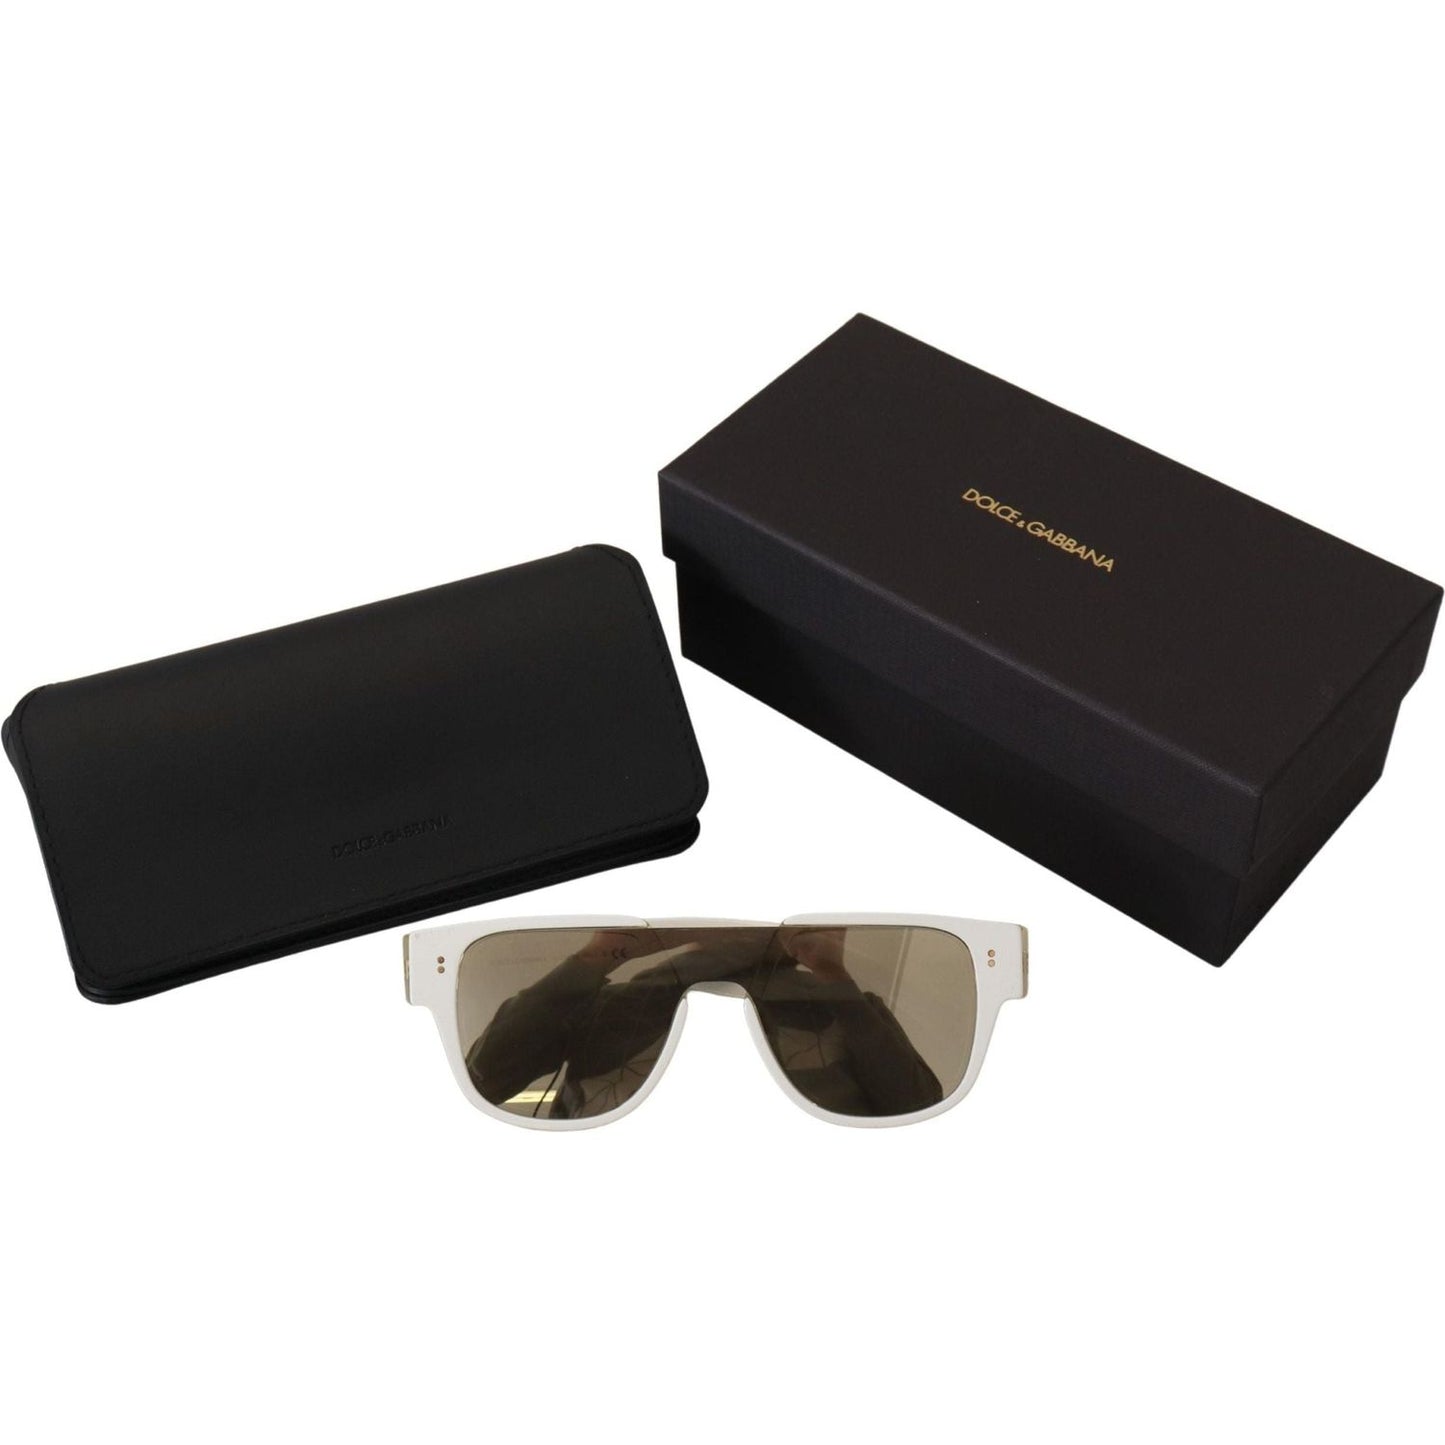 Dolce & Gabbana Elegant White Acetate Sunglasses for Women white-acetate-full-rim-frame-shades-dg4356f-sunglasses IMG_4045-scaled-902adc82-099.jpg